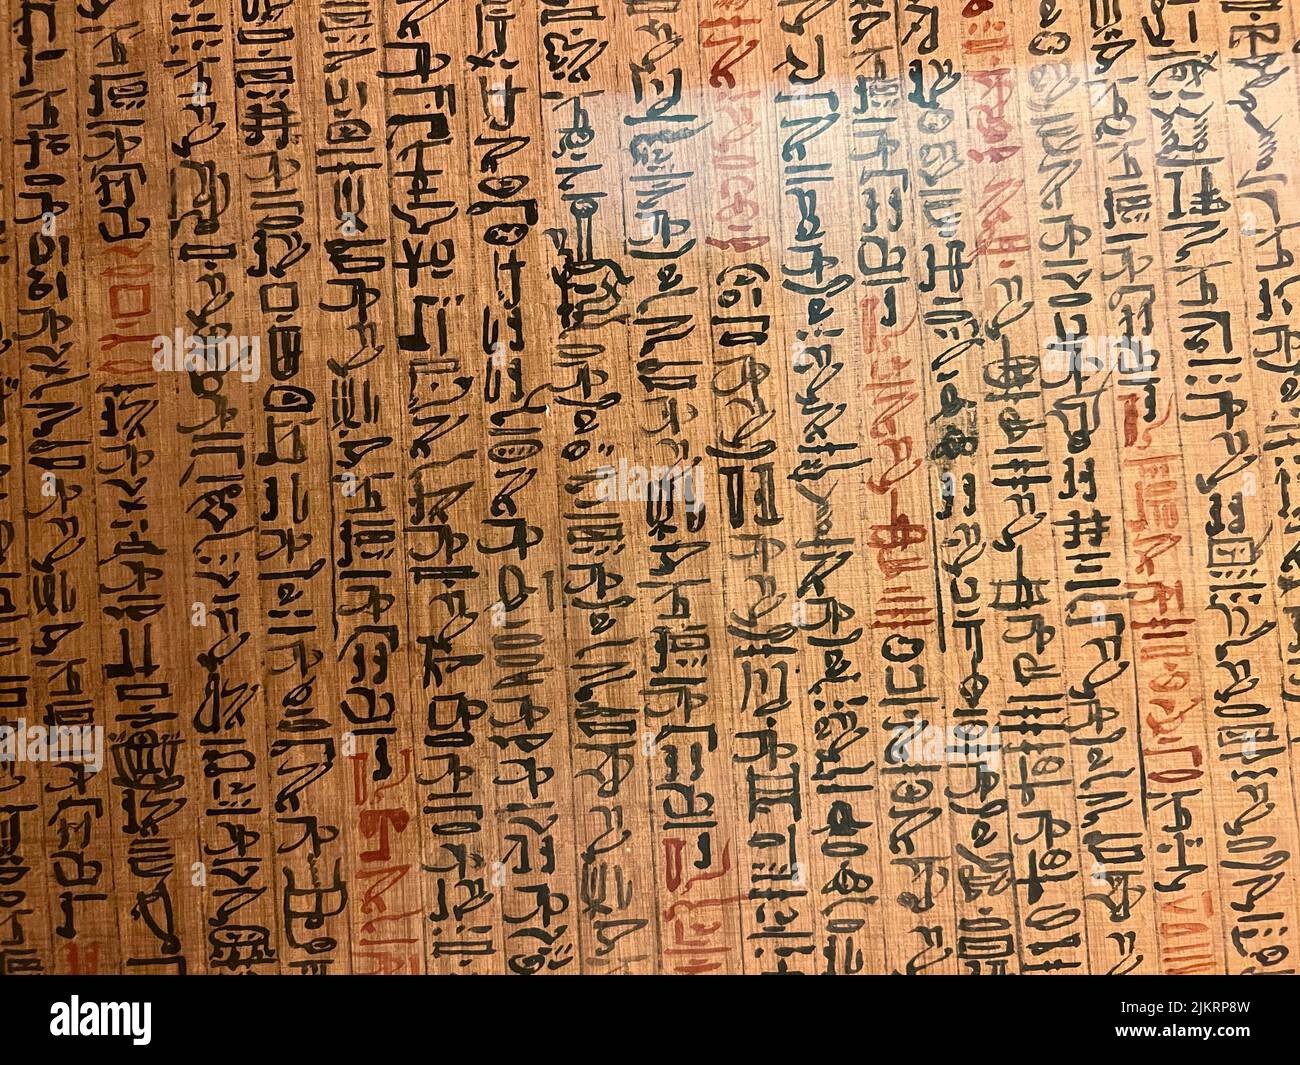 Aus dem Buch der Toten des Goldarbeiters von Amun, Sobekmose Papyrus, Tinte, Pigment New Kingdom, Dynasty 18, Wahrscheinlich Herrschaft von Thutmose krank zur Herrschaft von Amunhotep II, um 1479-1400 v. Chr. Dies ist einer der wichtigsten religiösen Texte des Neuen Reiches, zum Teil, weil es sich um eine frühe Version handelt, die die Entwicklung aller späteren Totenbücher enthüllt. Der Papyrus ist etwa fünfundzwanzig Meter lang, beidseitig eingeschrieben (eine seltene Eigenschaft) und enthält fast hundert "Kapitel", fast die Hälfte der insgesamt bekannten Gruppe von Book of the Dead-Texten. Stockfoto